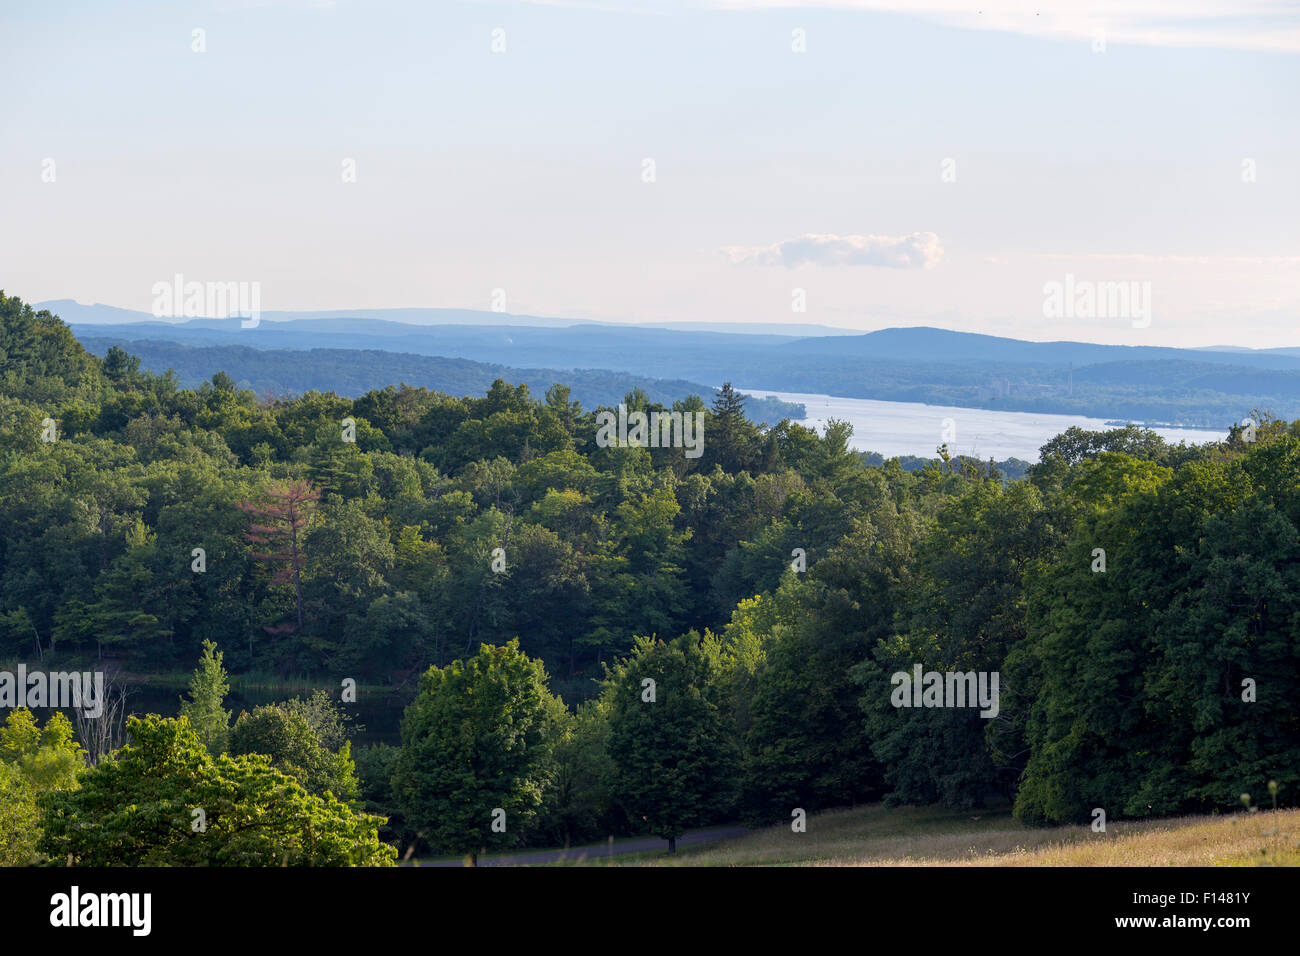 La vue sur la rivière Hudson et les monts Catskill Frederic Church Home Hudson River School à Hudson, NY de Solana Banque D'Images